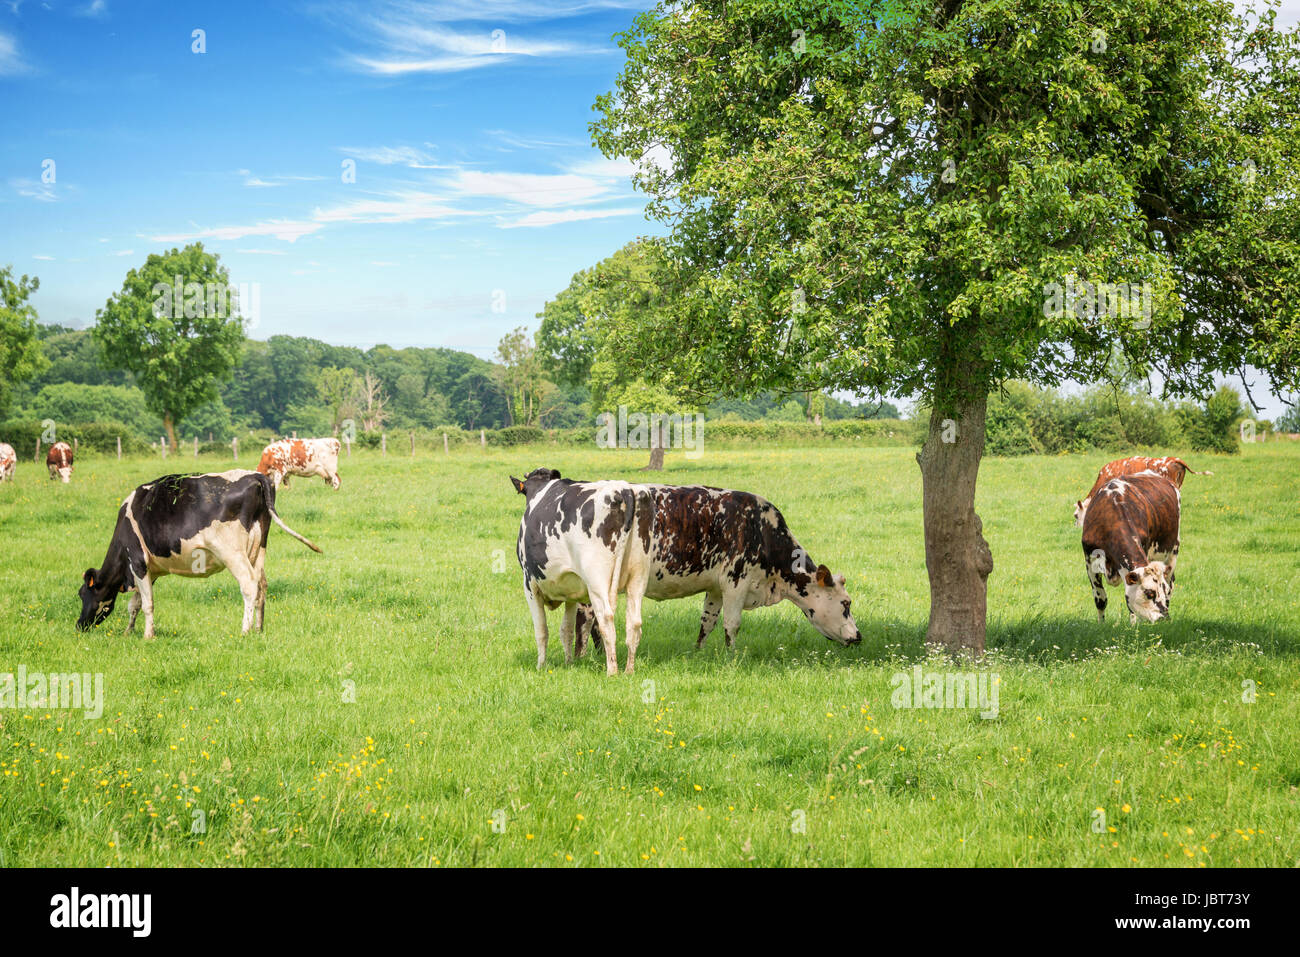 Norman schwarz / weiß Kühe weiden auf grüner Wiese mit Bäumen an einem sonnigen Tag in der Normandie, Frankreich. Sommer-Landschaft und pastu Stockfoto